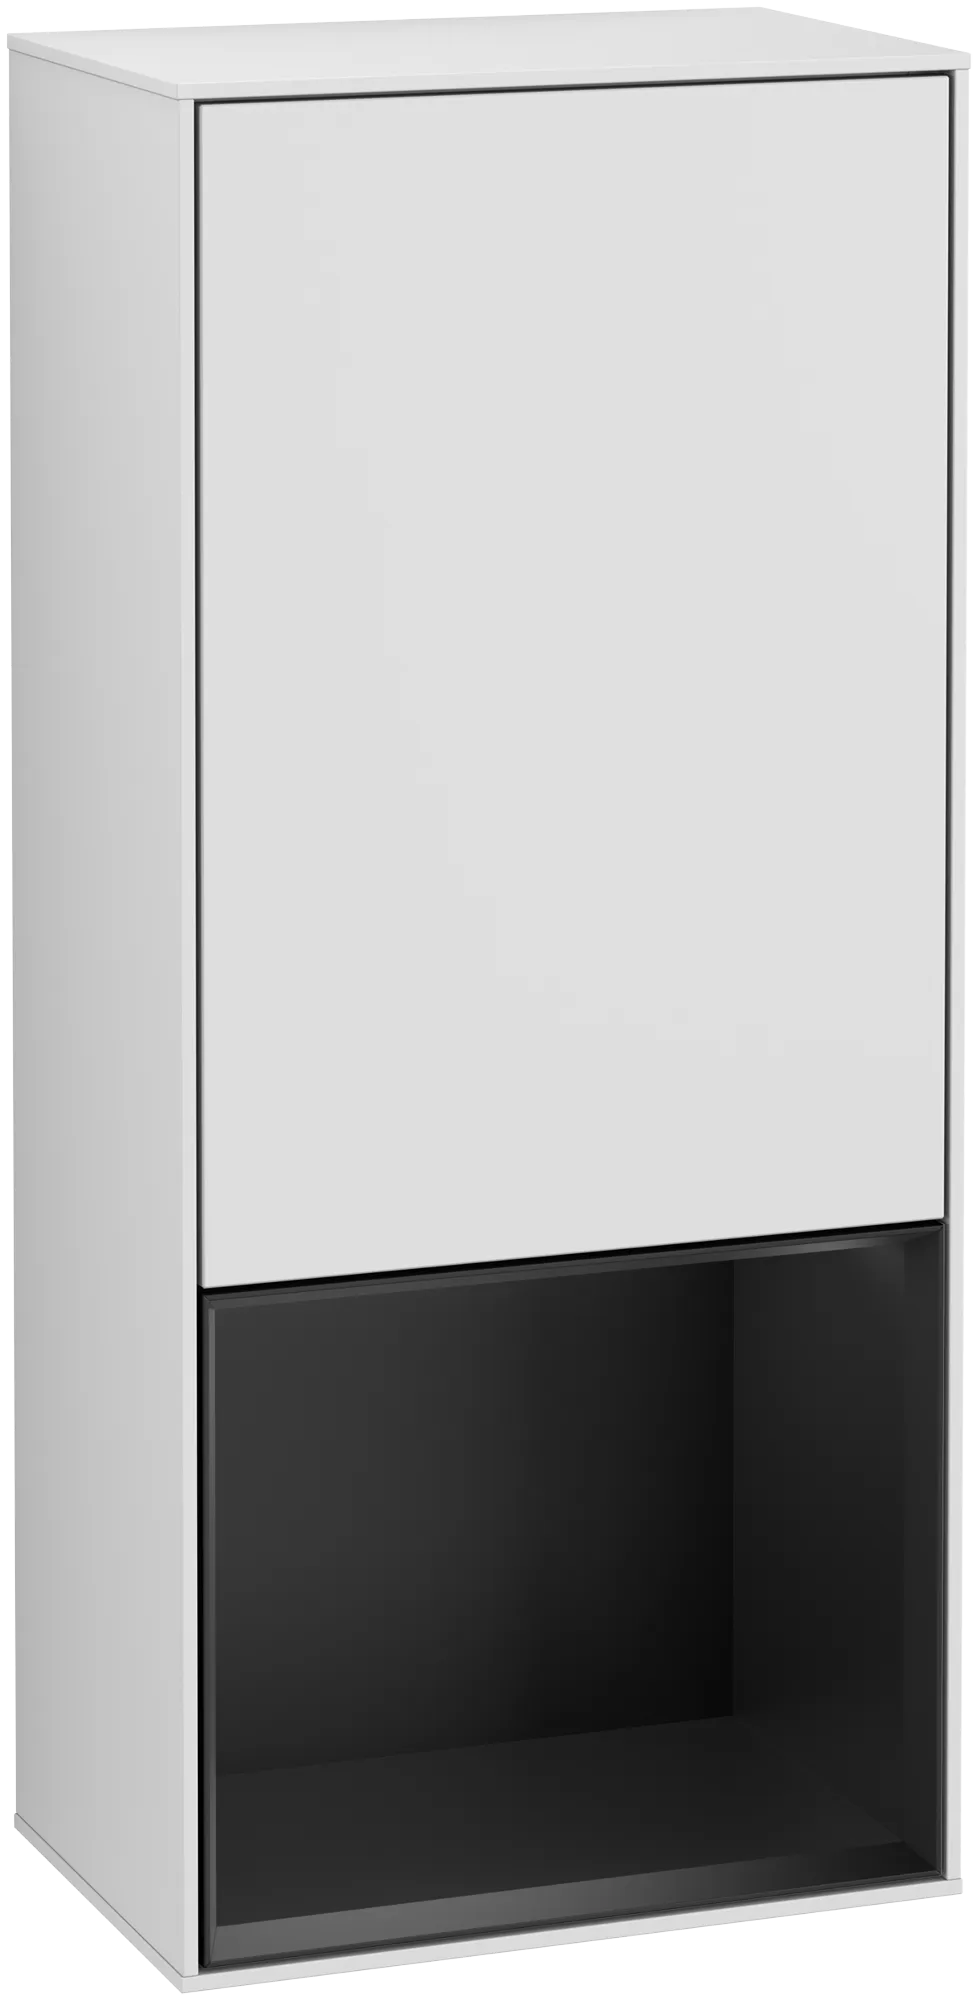 Bild von VILLEROY BOCH Finion Seitenschrank, mit Beleuchtung, 1 Tür, 418 x 936 x 270 mm, White Matt Lacquer / Black Matt Lacquer #G540PDMT